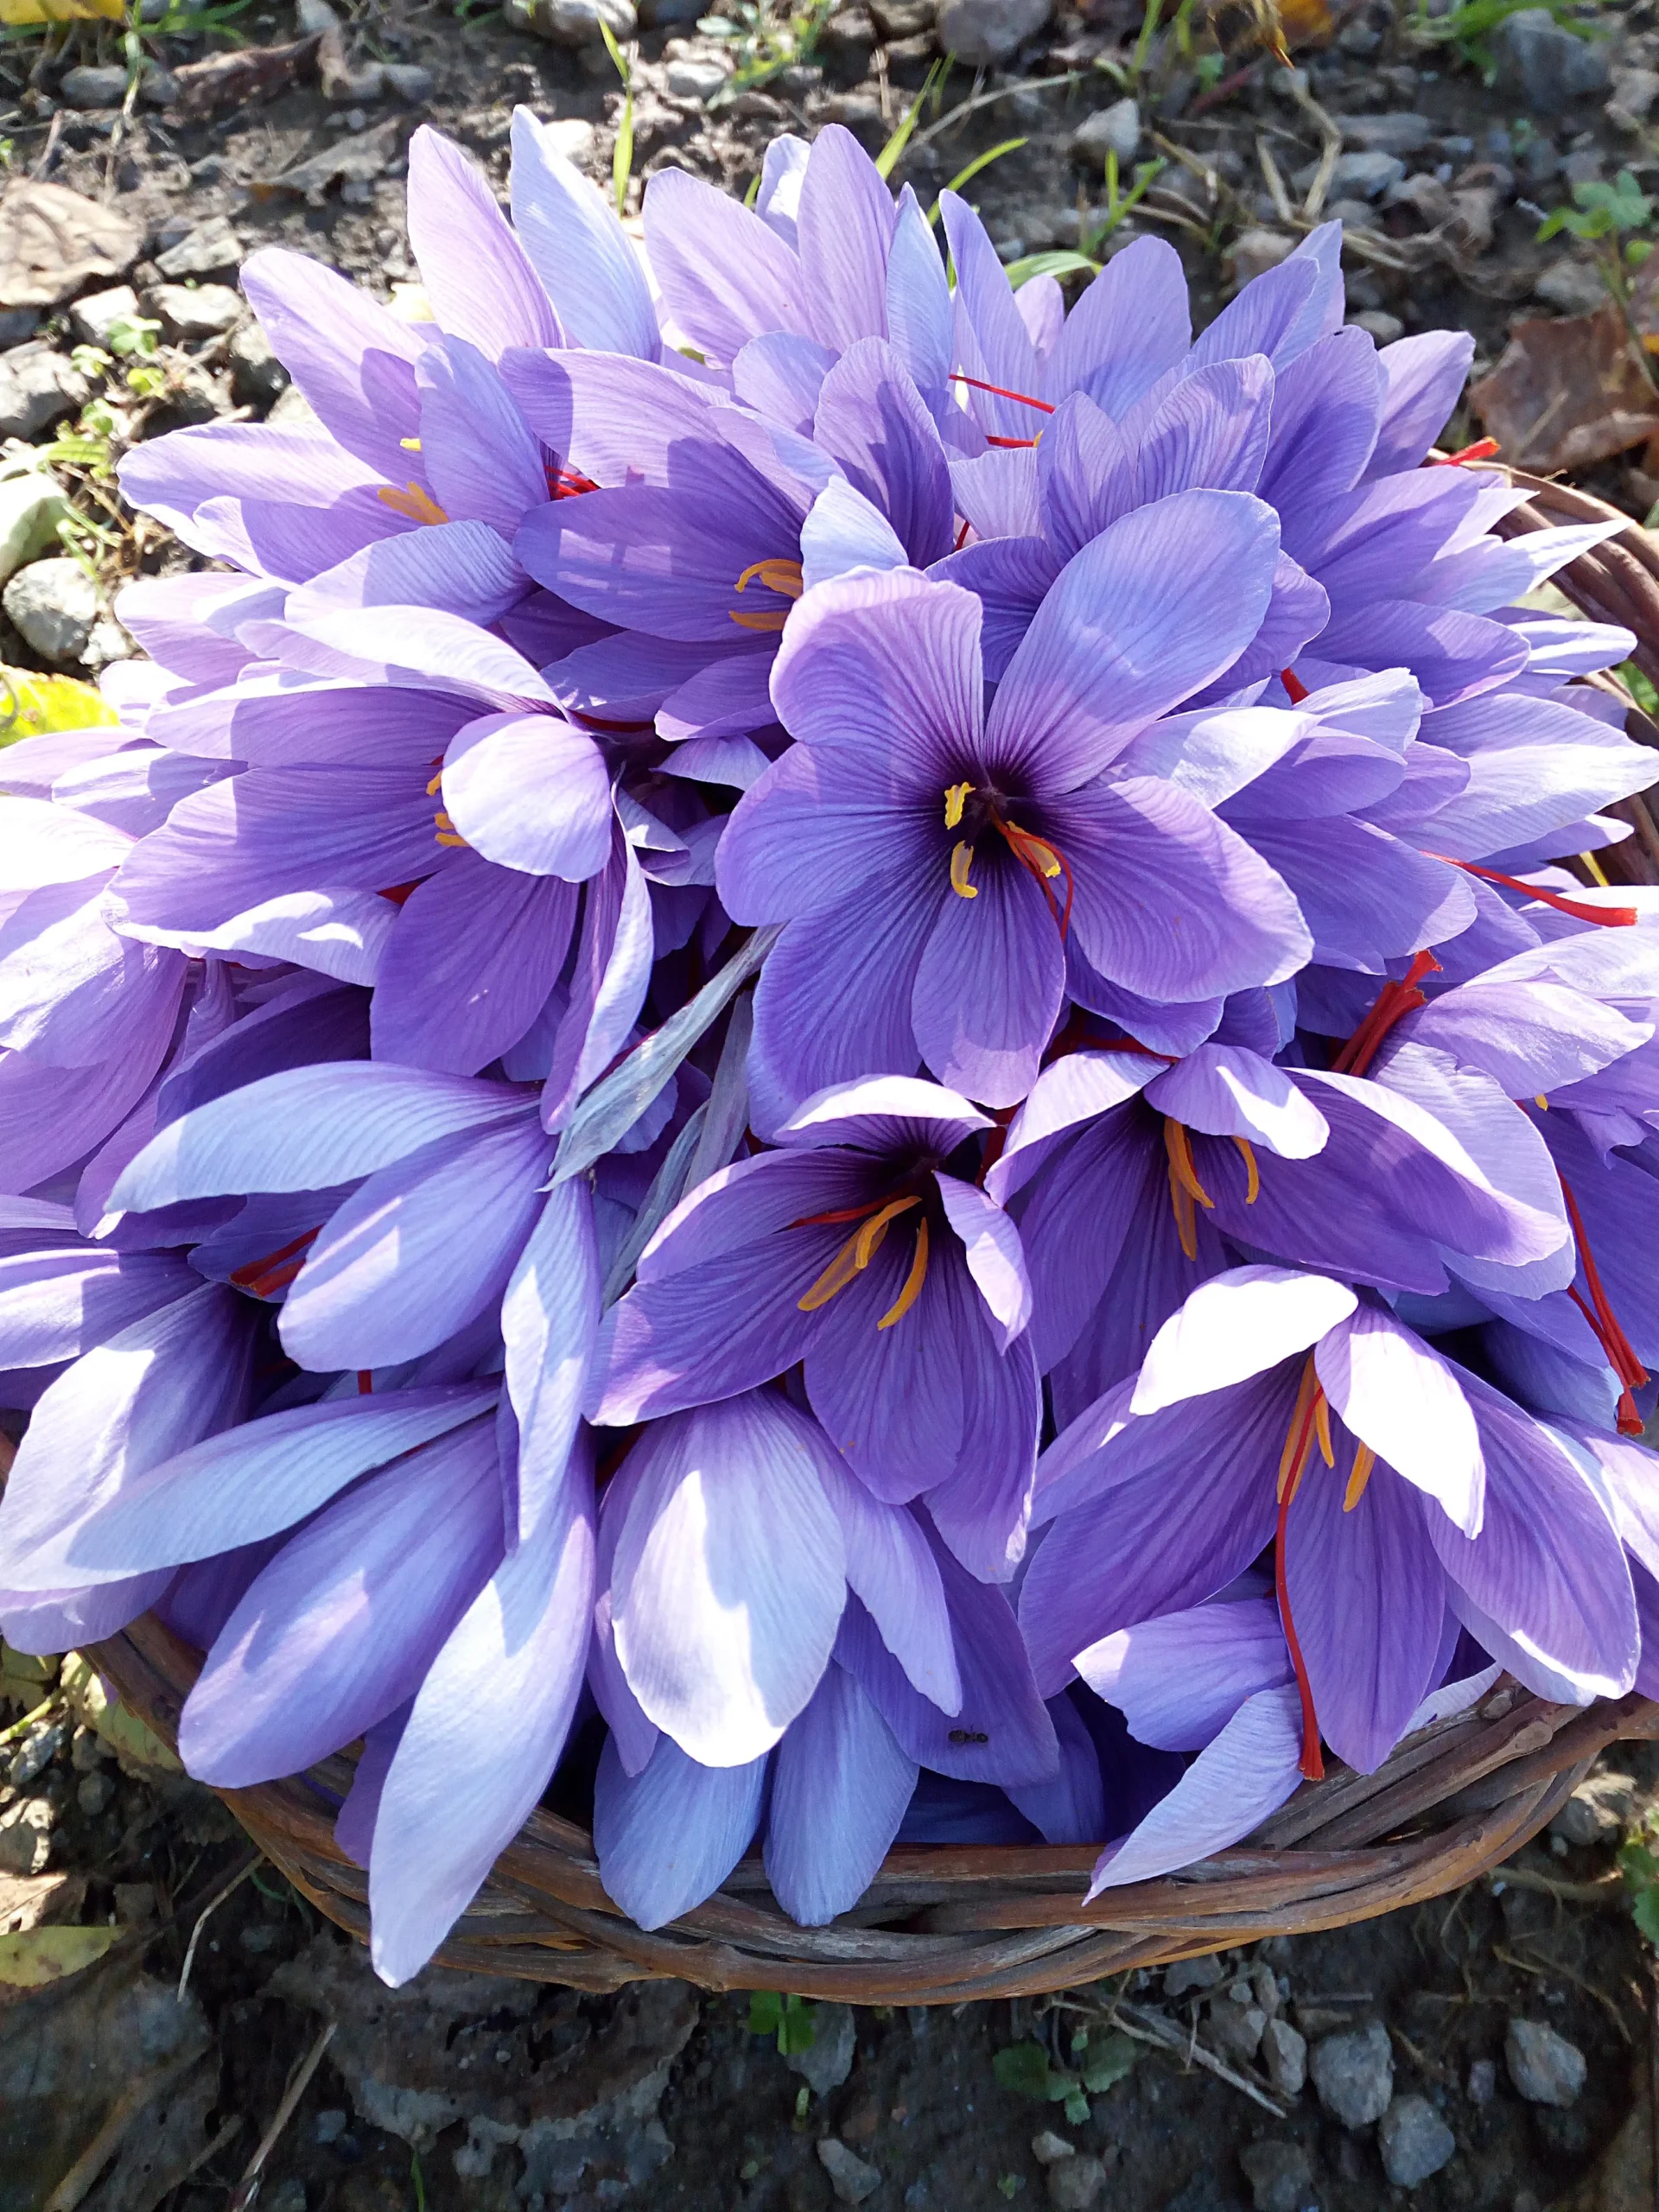 fiori crocus - Che fiore e il Croco